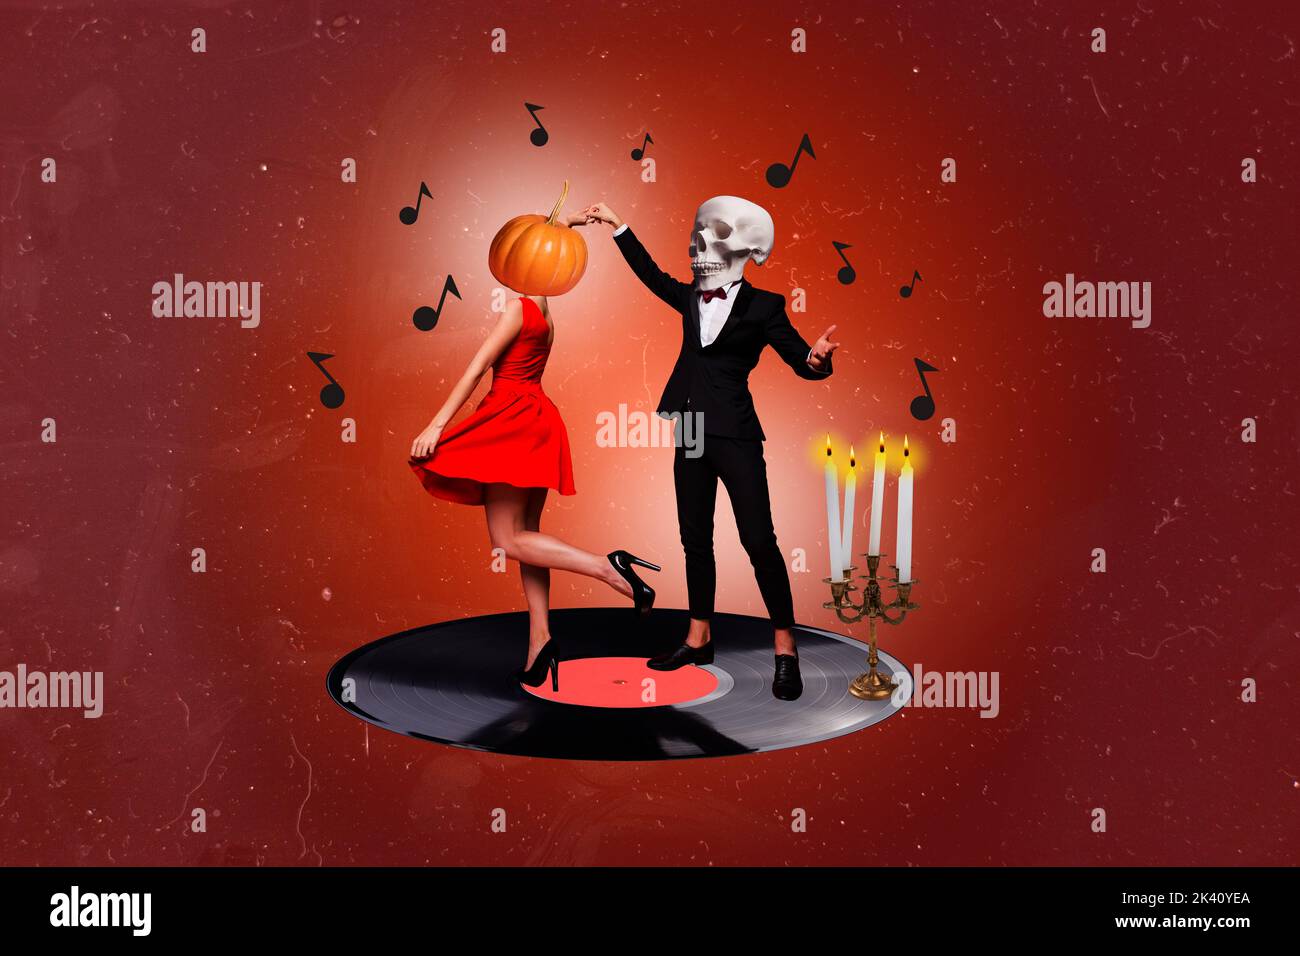 Poster créatif collage de drôle de couple funky danse ont amusant tango date homme squelette tête de crâne femme robe citrouille vinyle bougies Banque D'Images